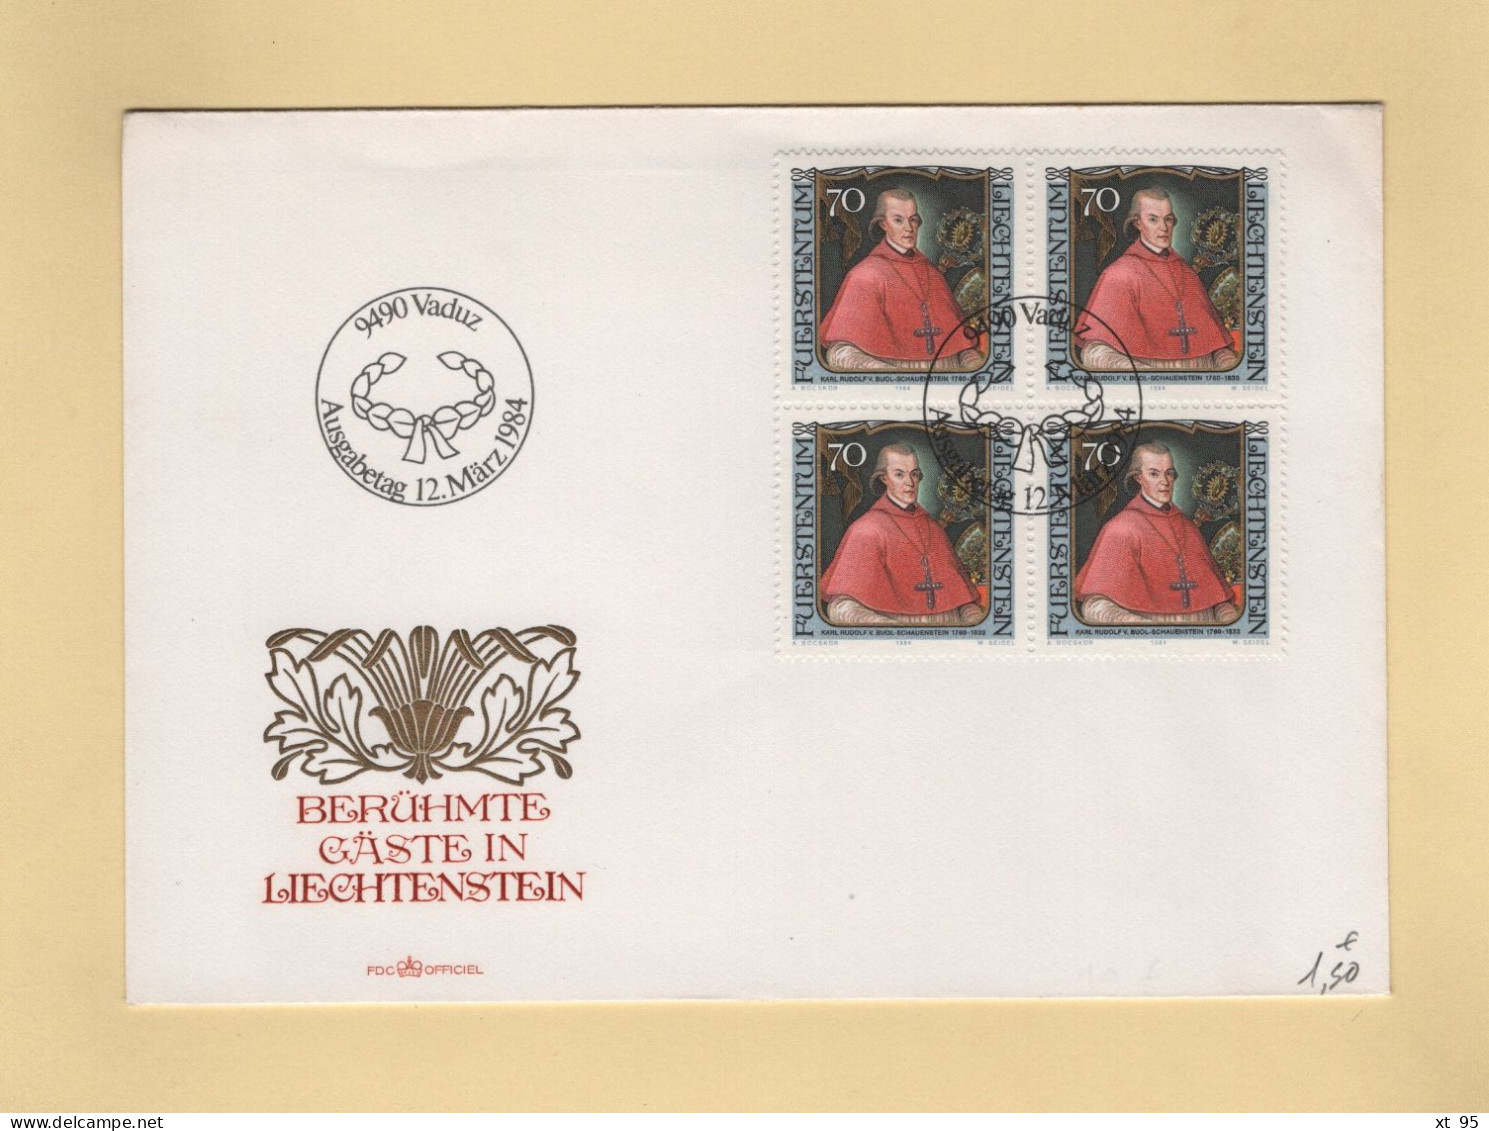 Liechtenstein - 1984 - N°781 - FDC - Karl Rudolf Von Buol Schavenstein - Covers & Documents